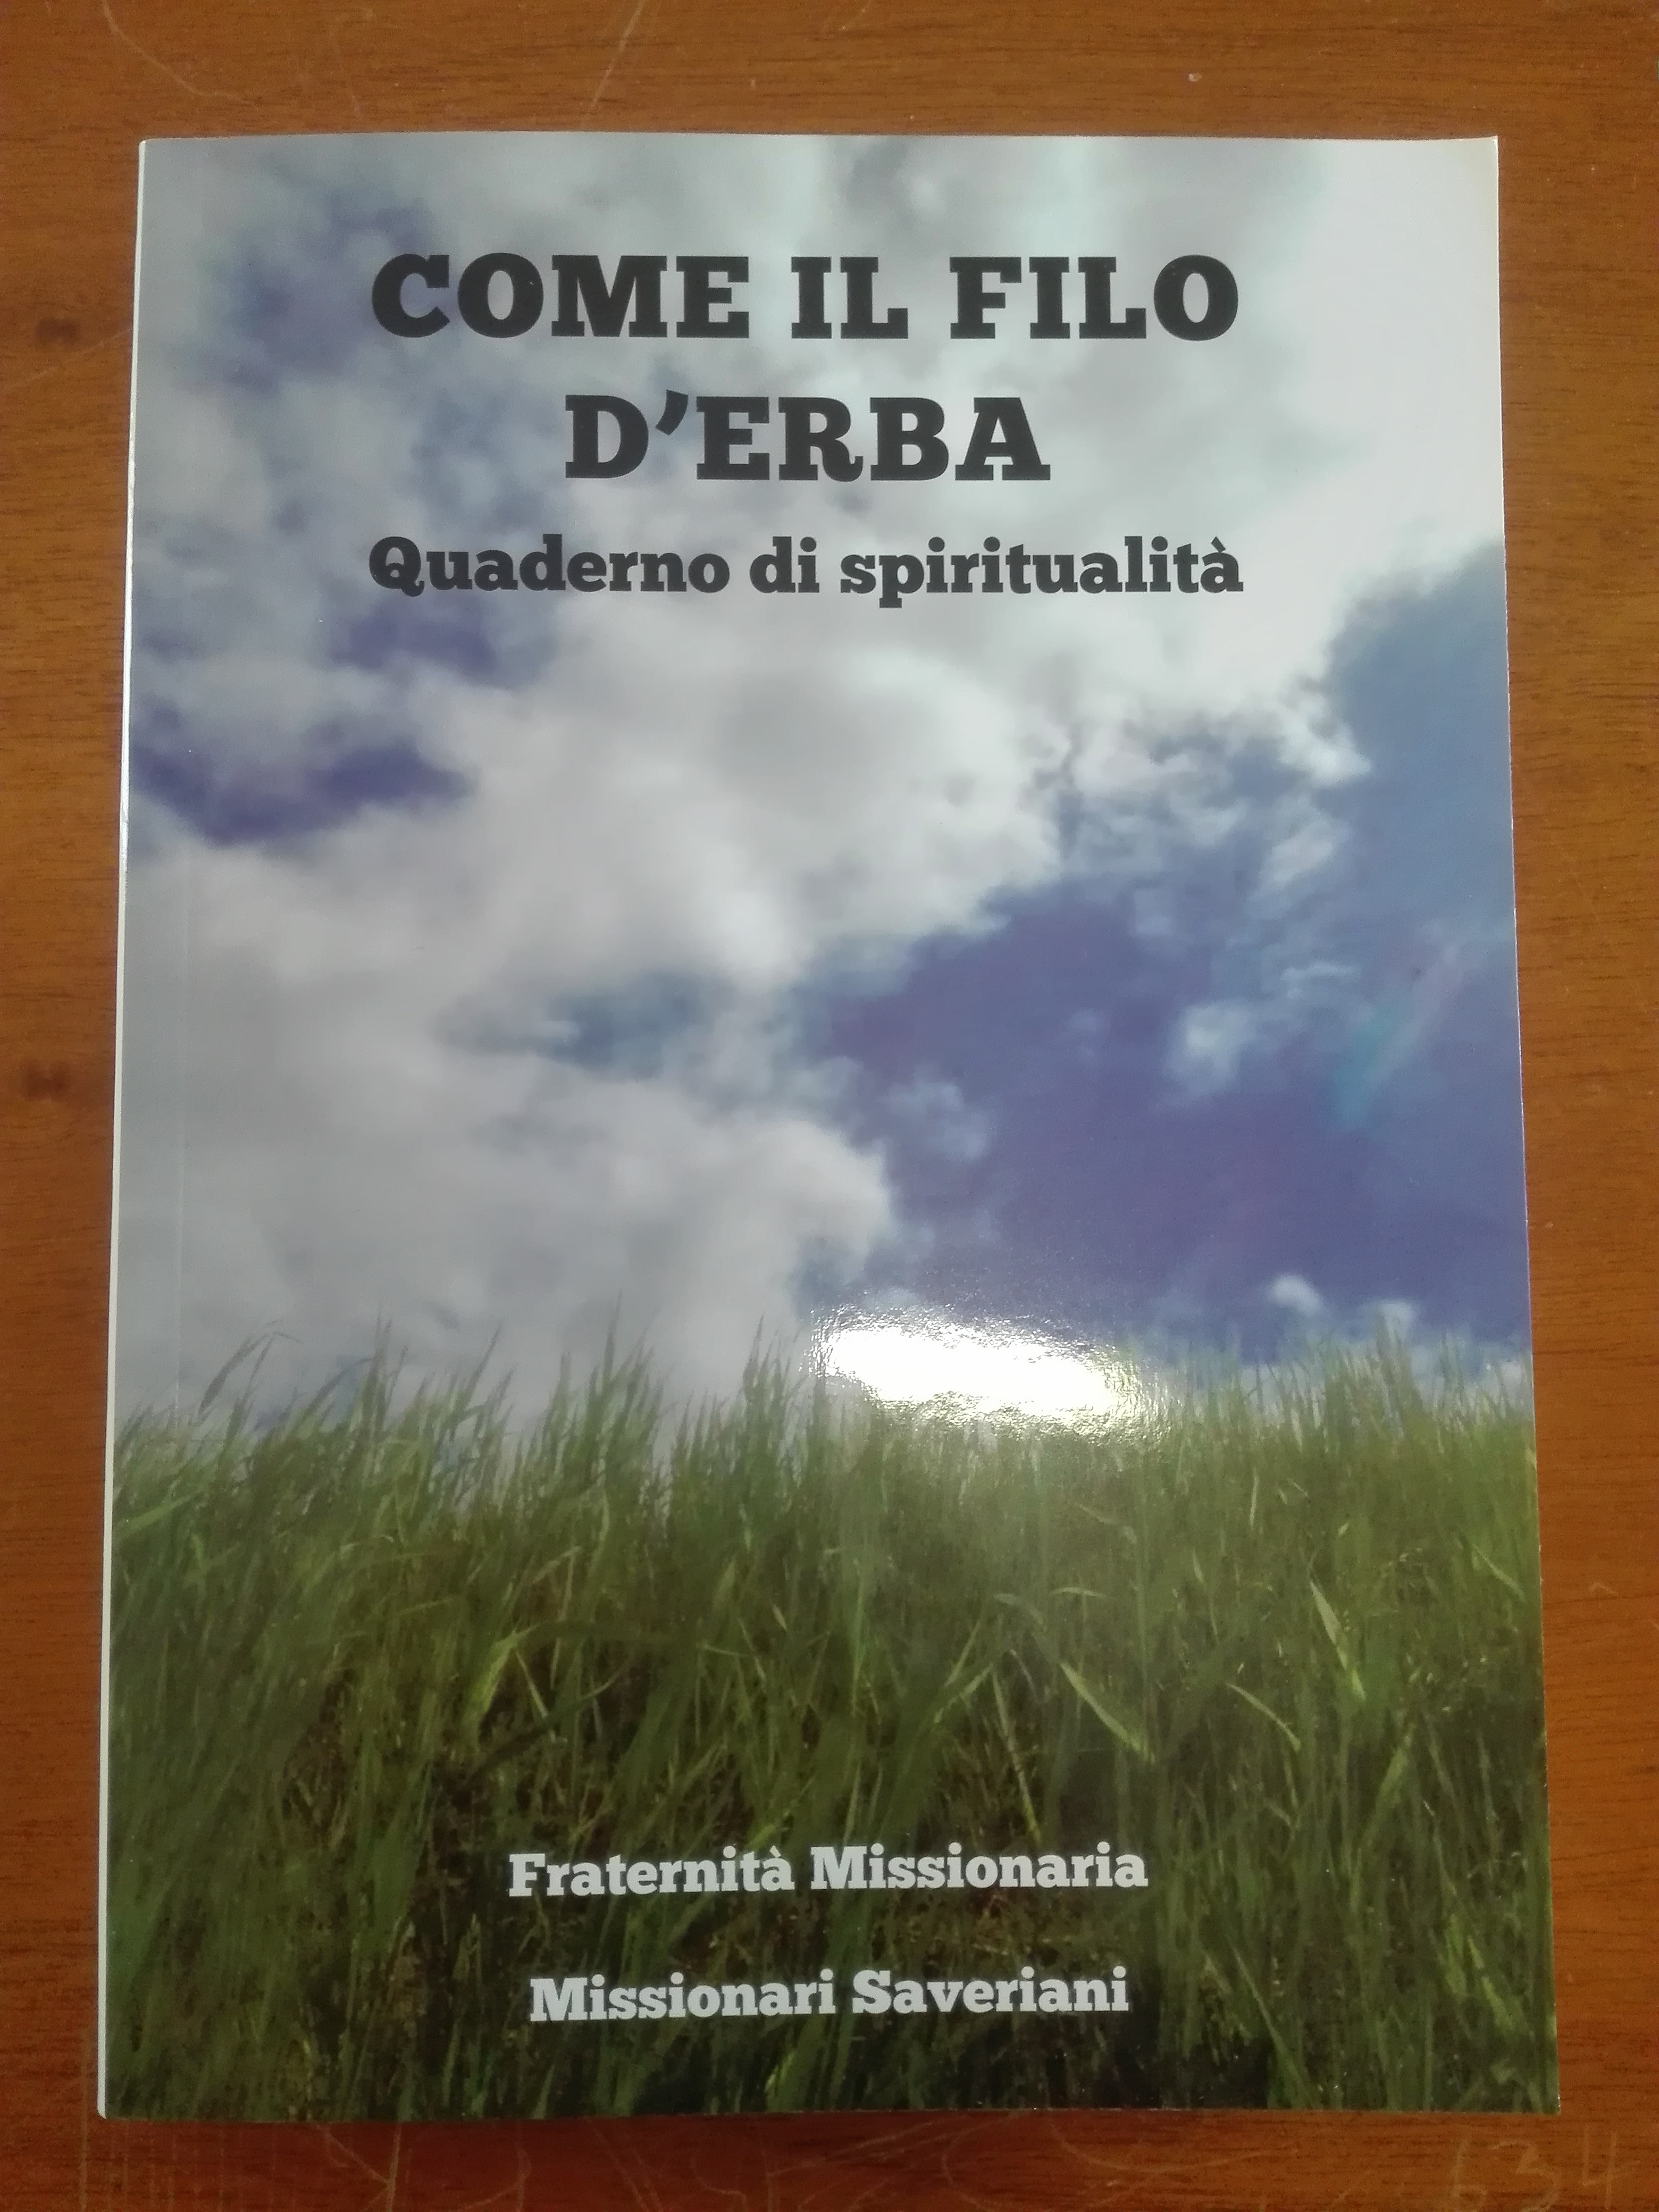 Come il filo d'erba, quaderno di spiritualità di Fraternità Missionaria Vicomero